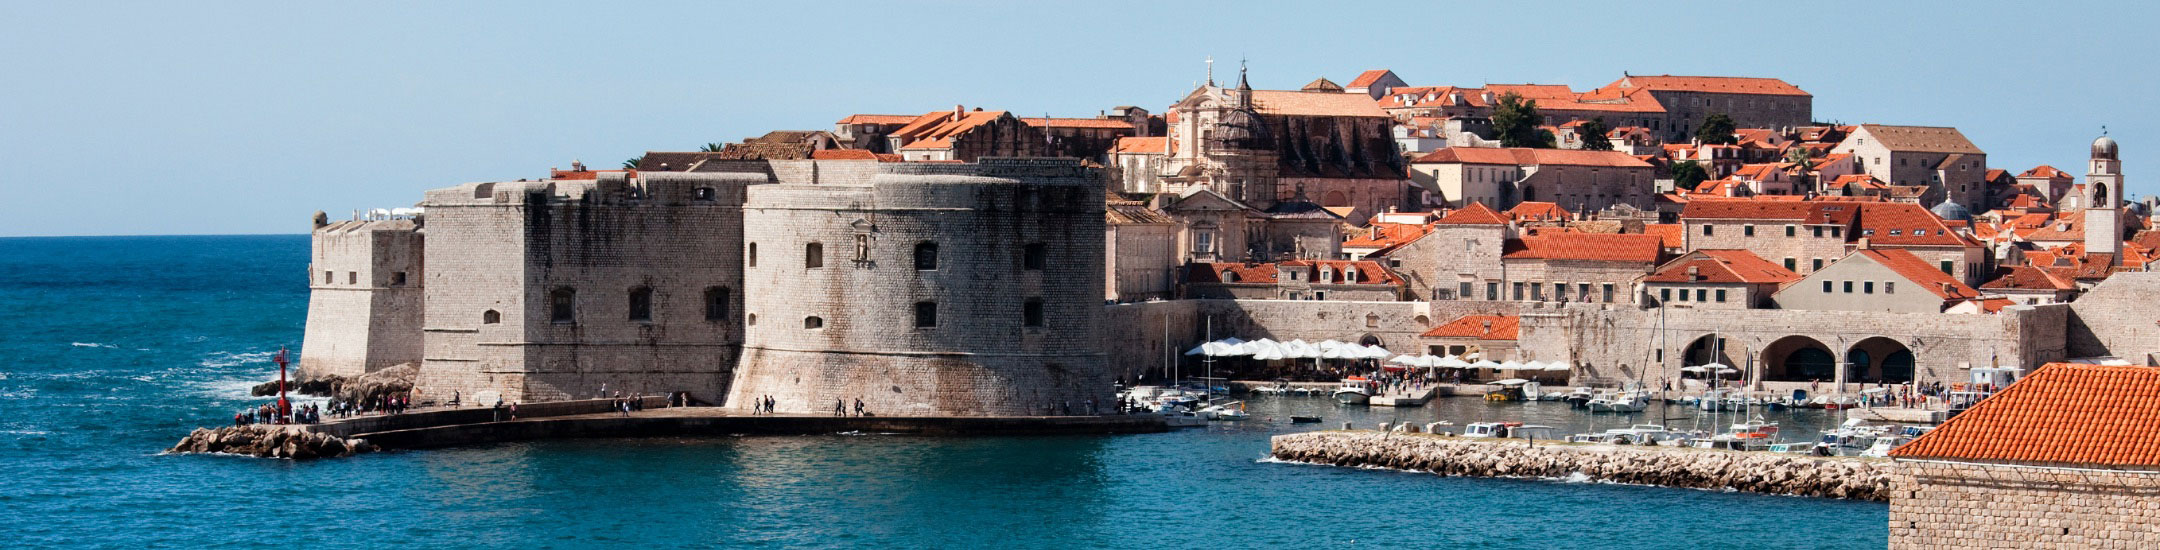 landscape view of Dubrovnik